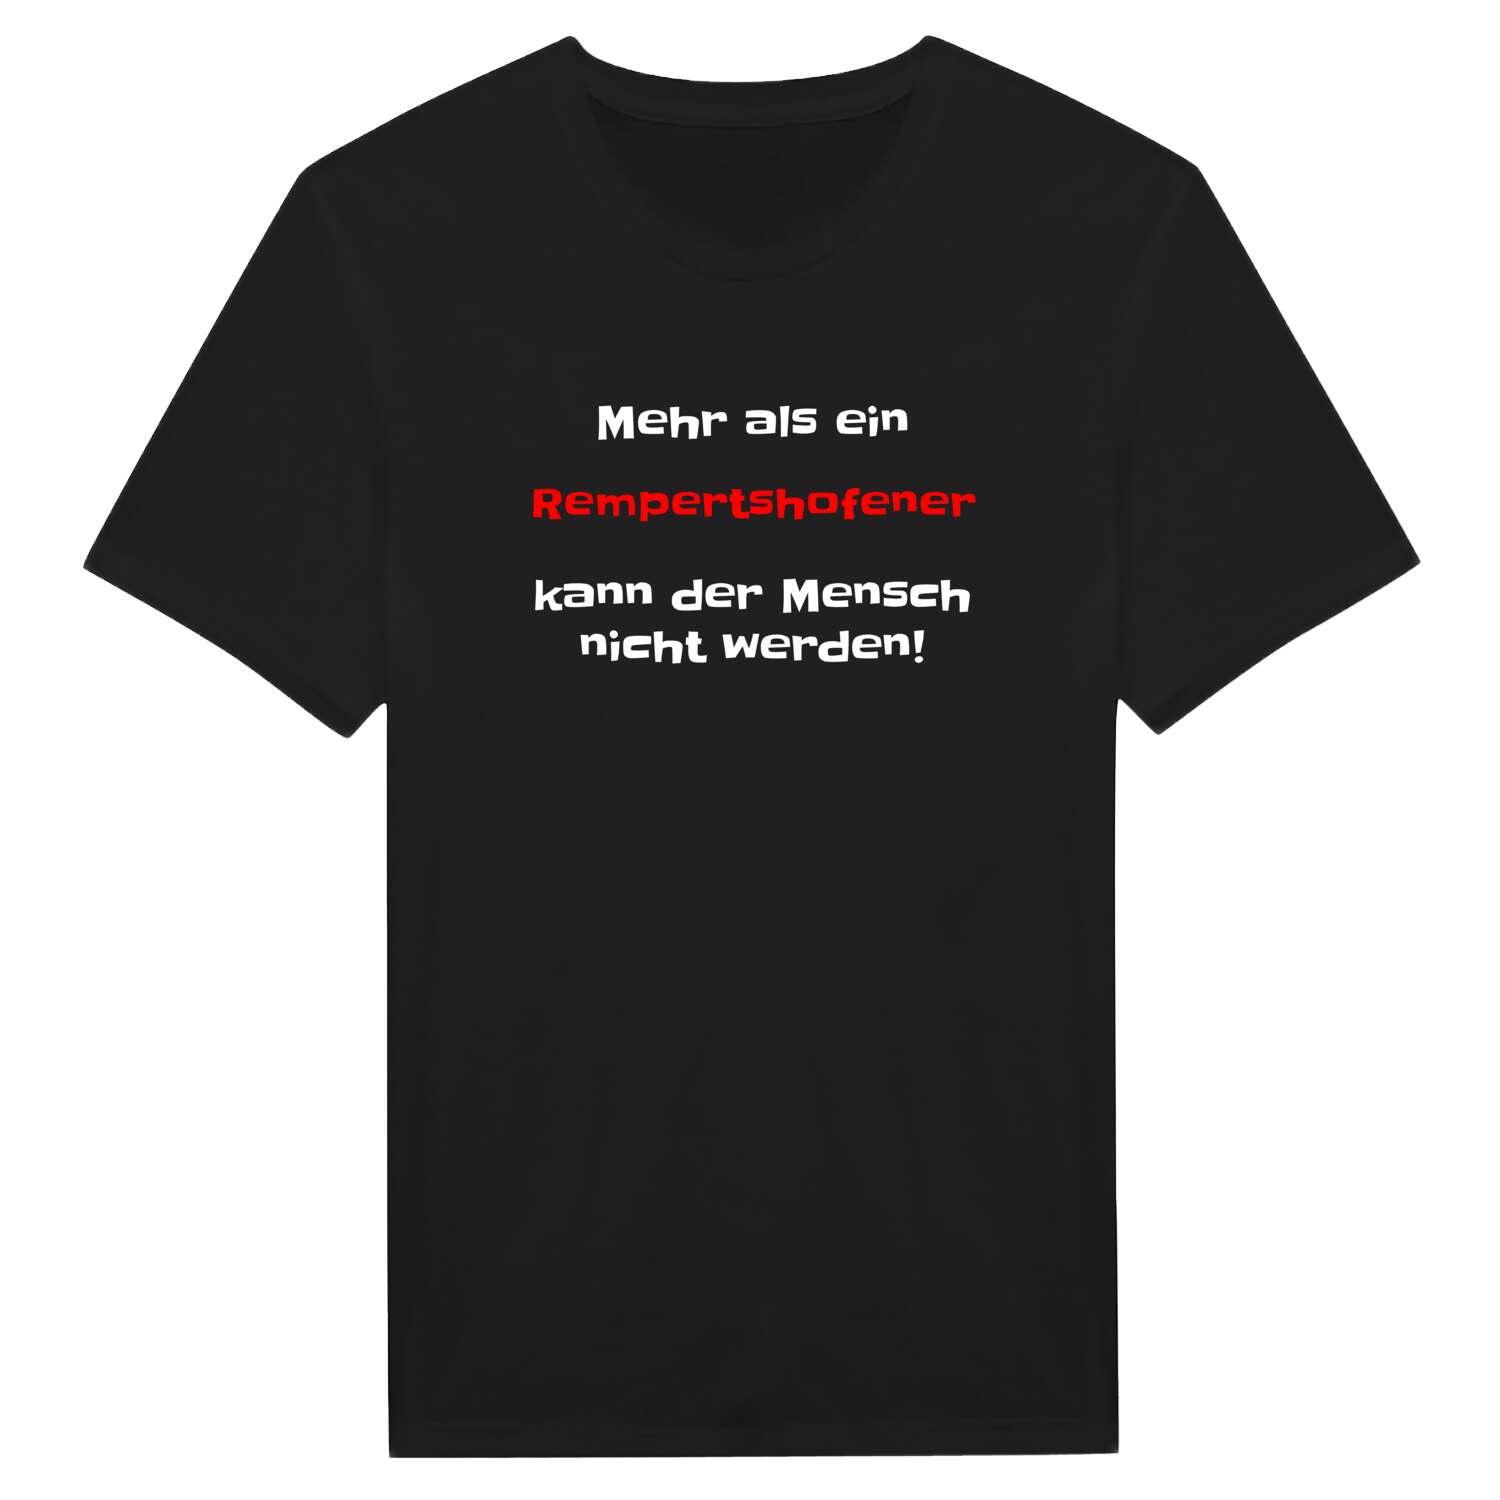 Rempertshofen T-Shirt »Mehr als ein«